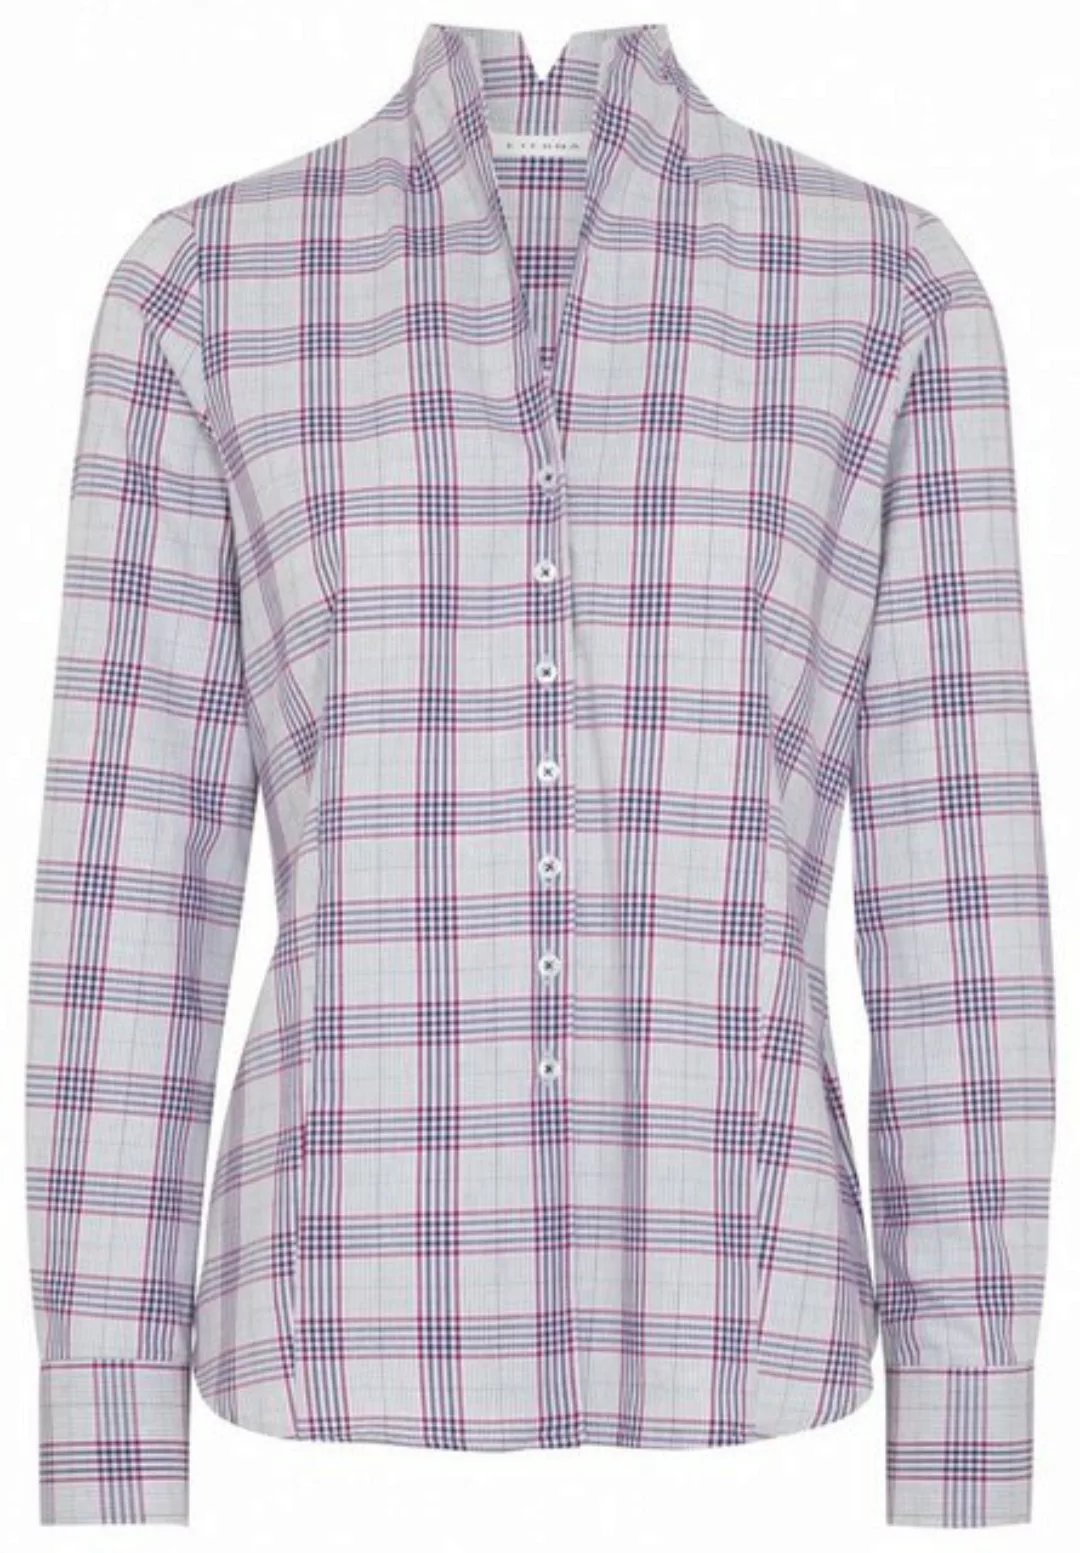 Eterna Klassische Bluse ETERNA MODERN CLASSIC Langarm Flannel Bluse weiß-bl günstig online kaufen